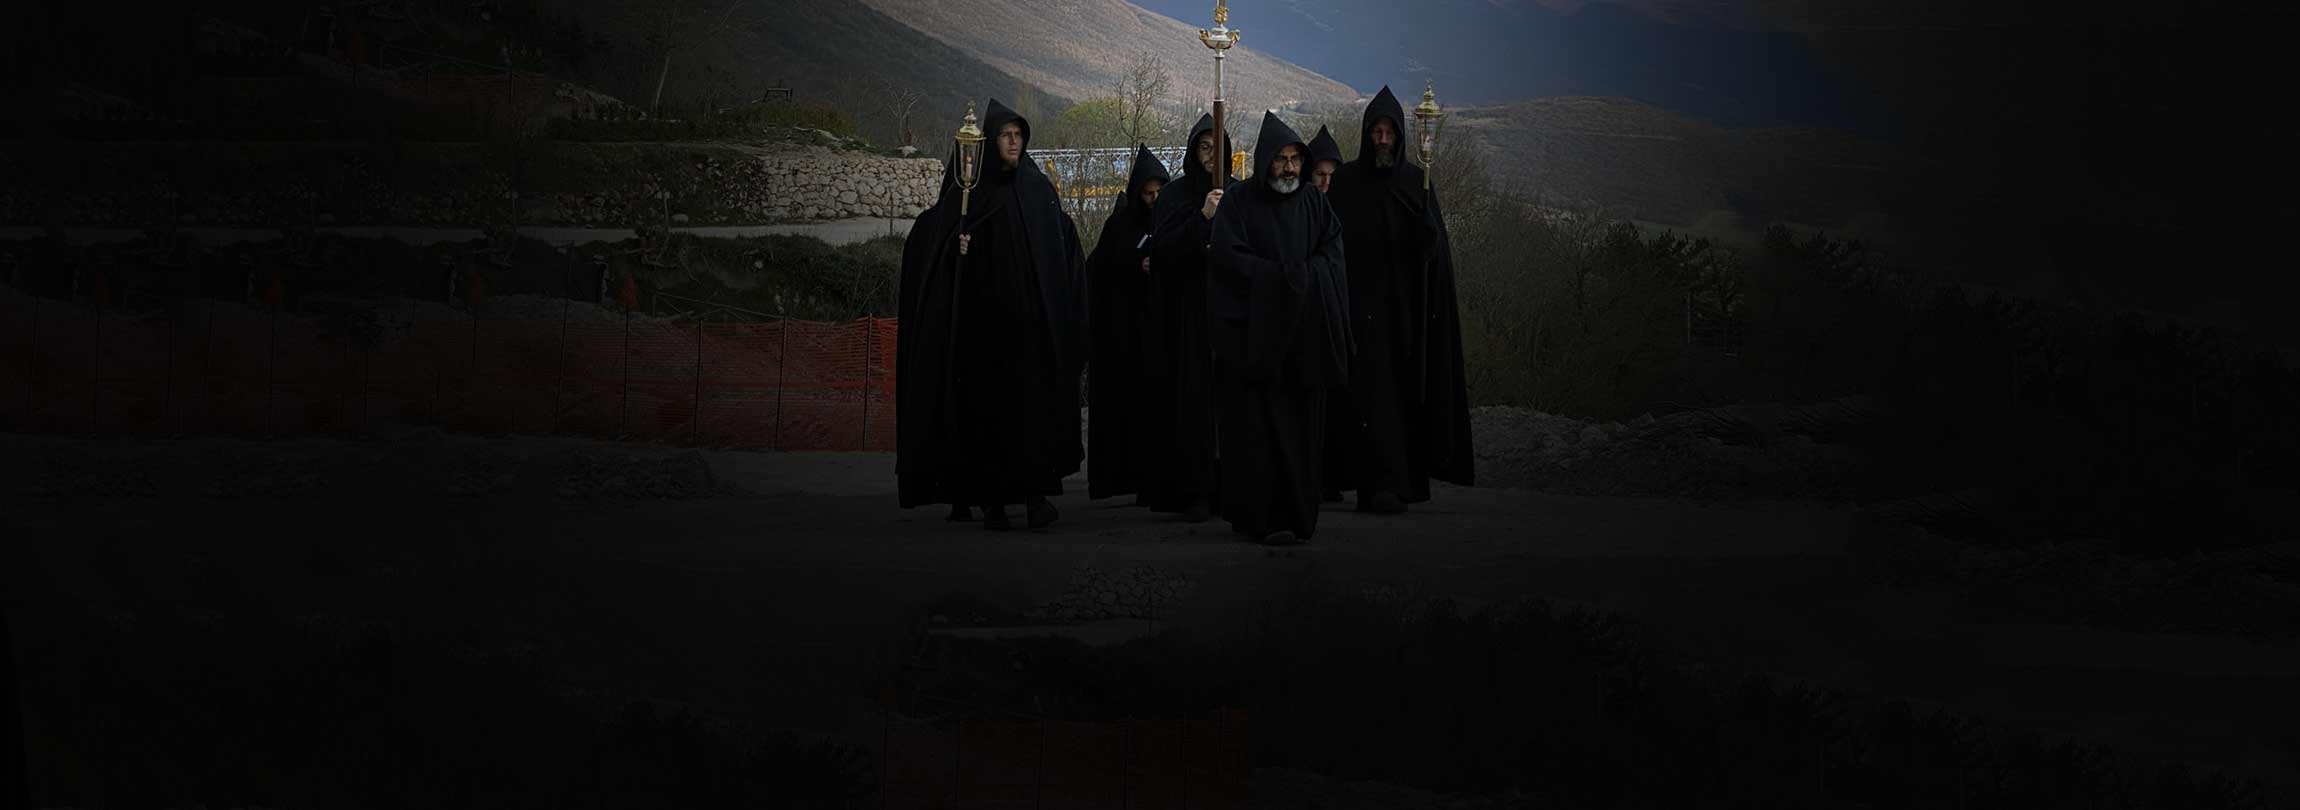 Monges de Núrsia combatem pandemia com procissões e orações